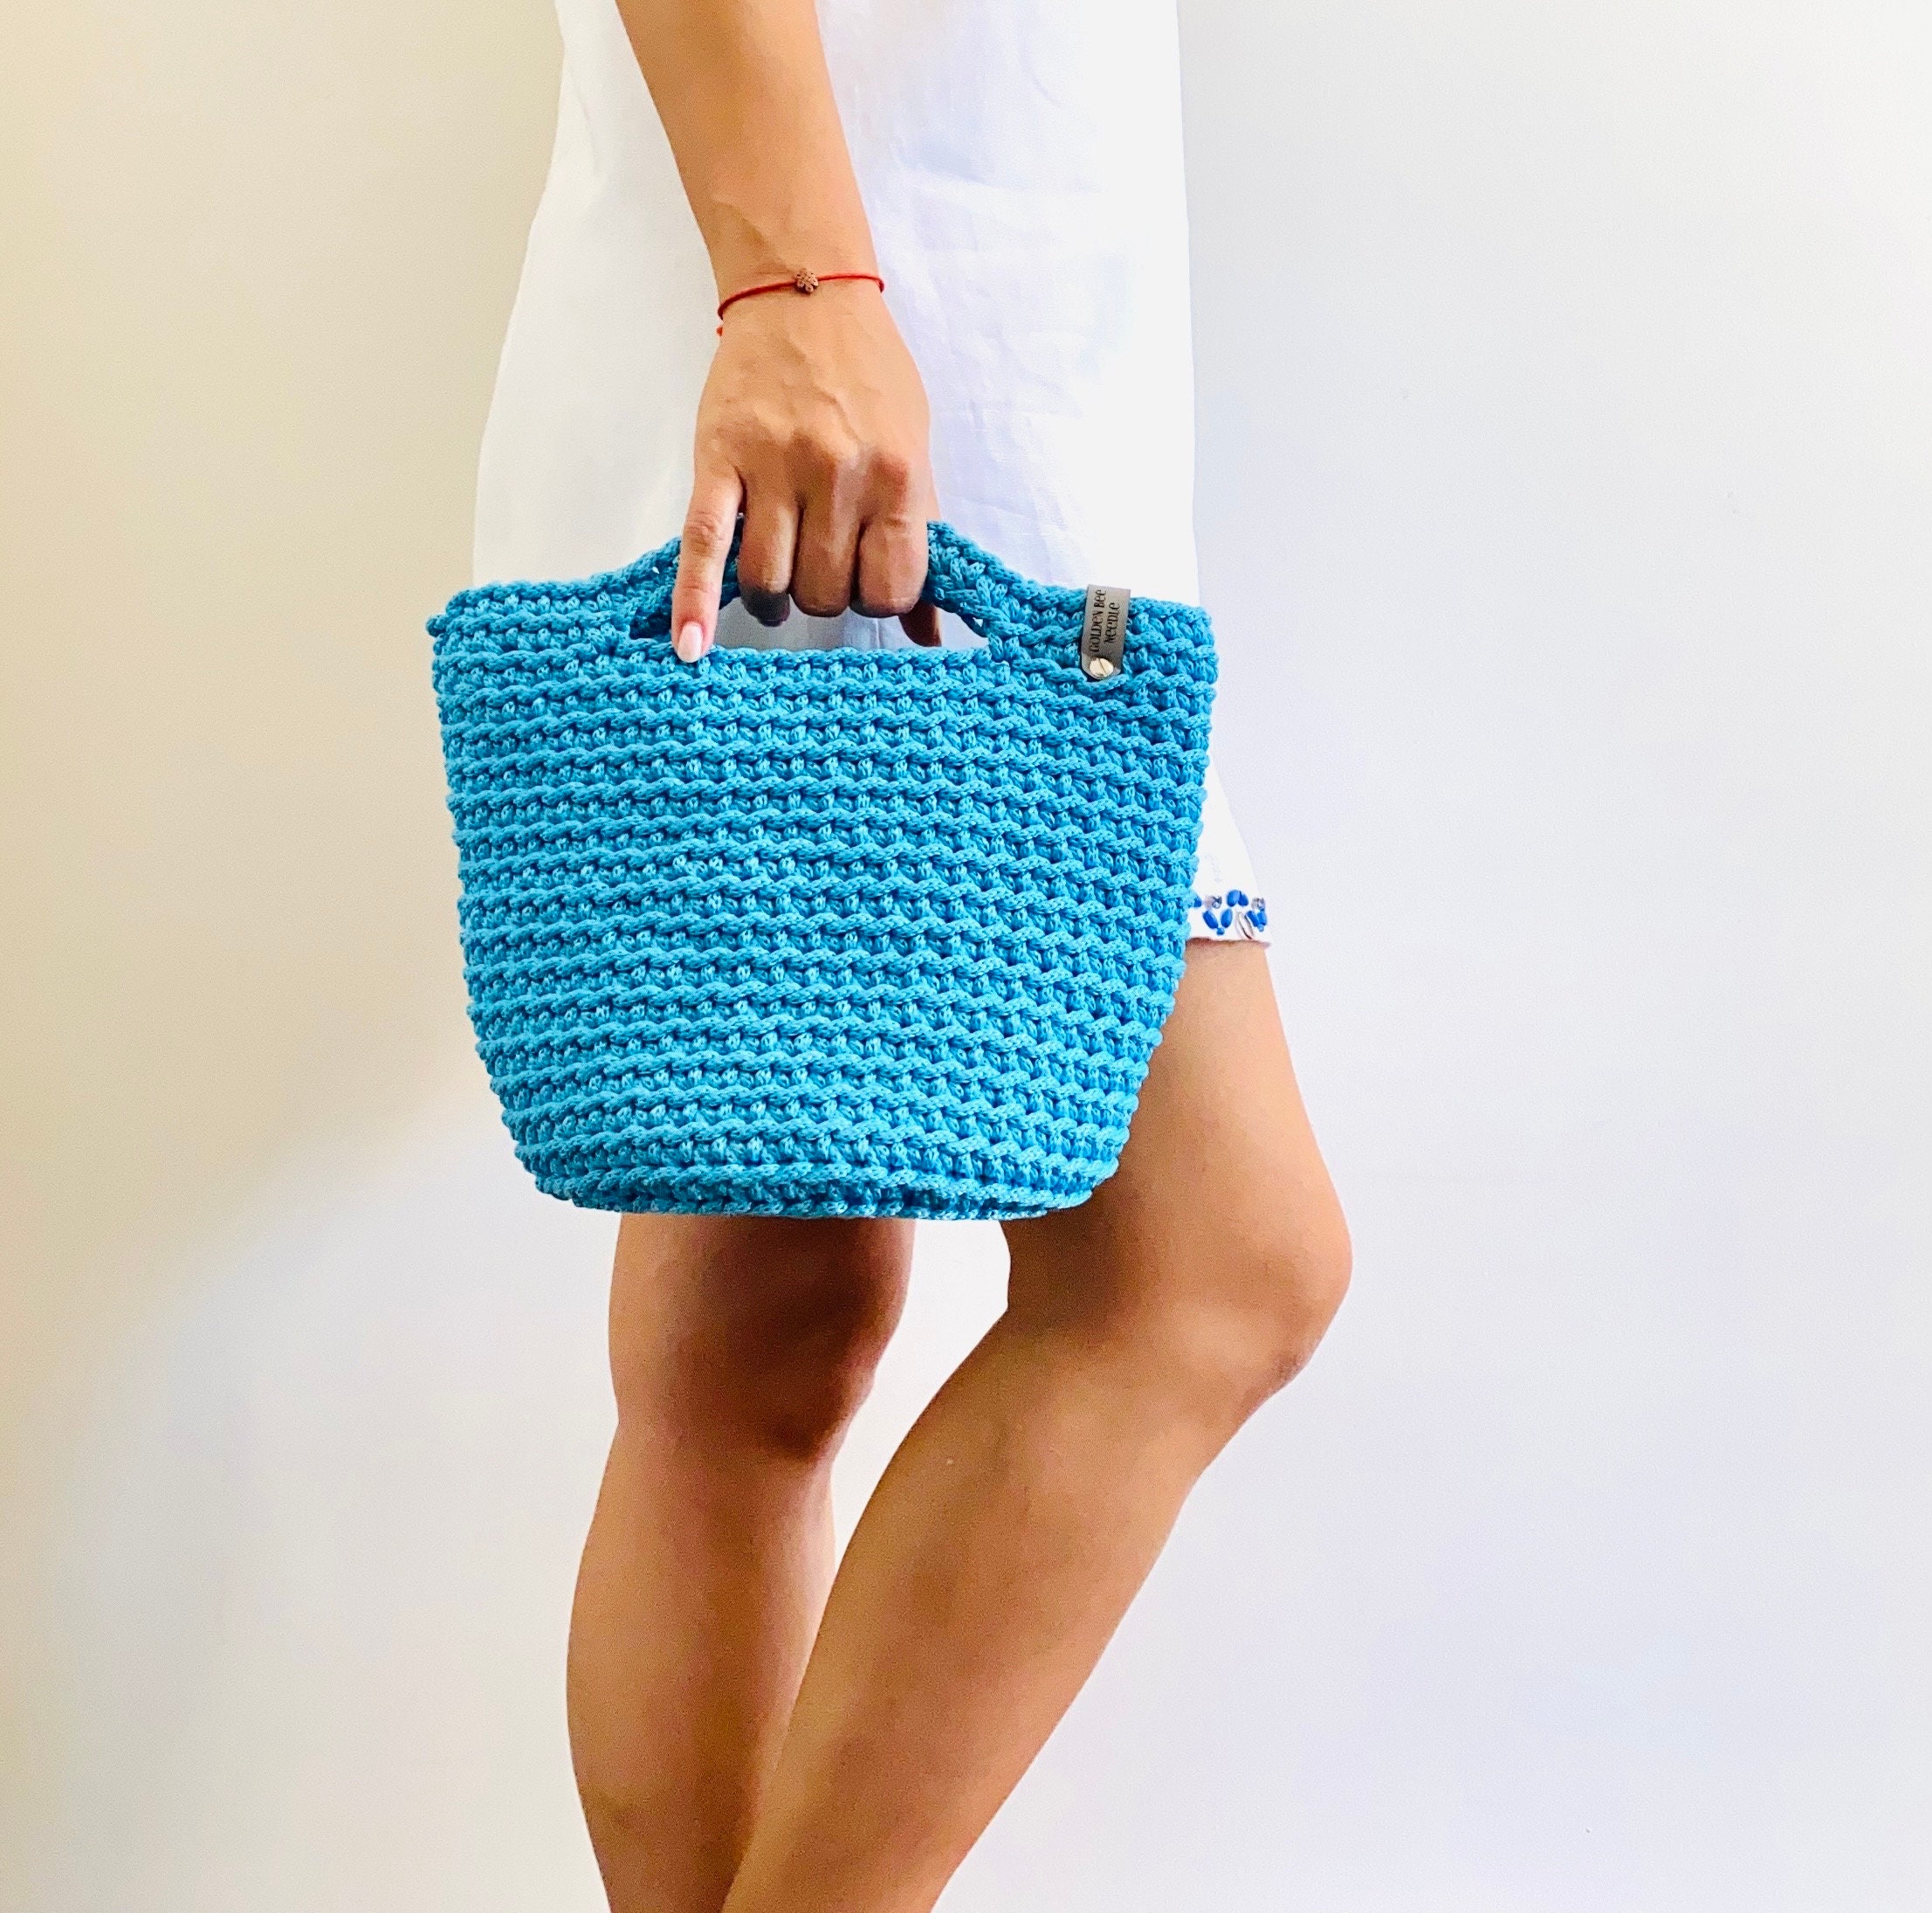 Handknitted Crochet Turquoise Handbag Top Shoulder Bag Birthday Gift Gift  for her